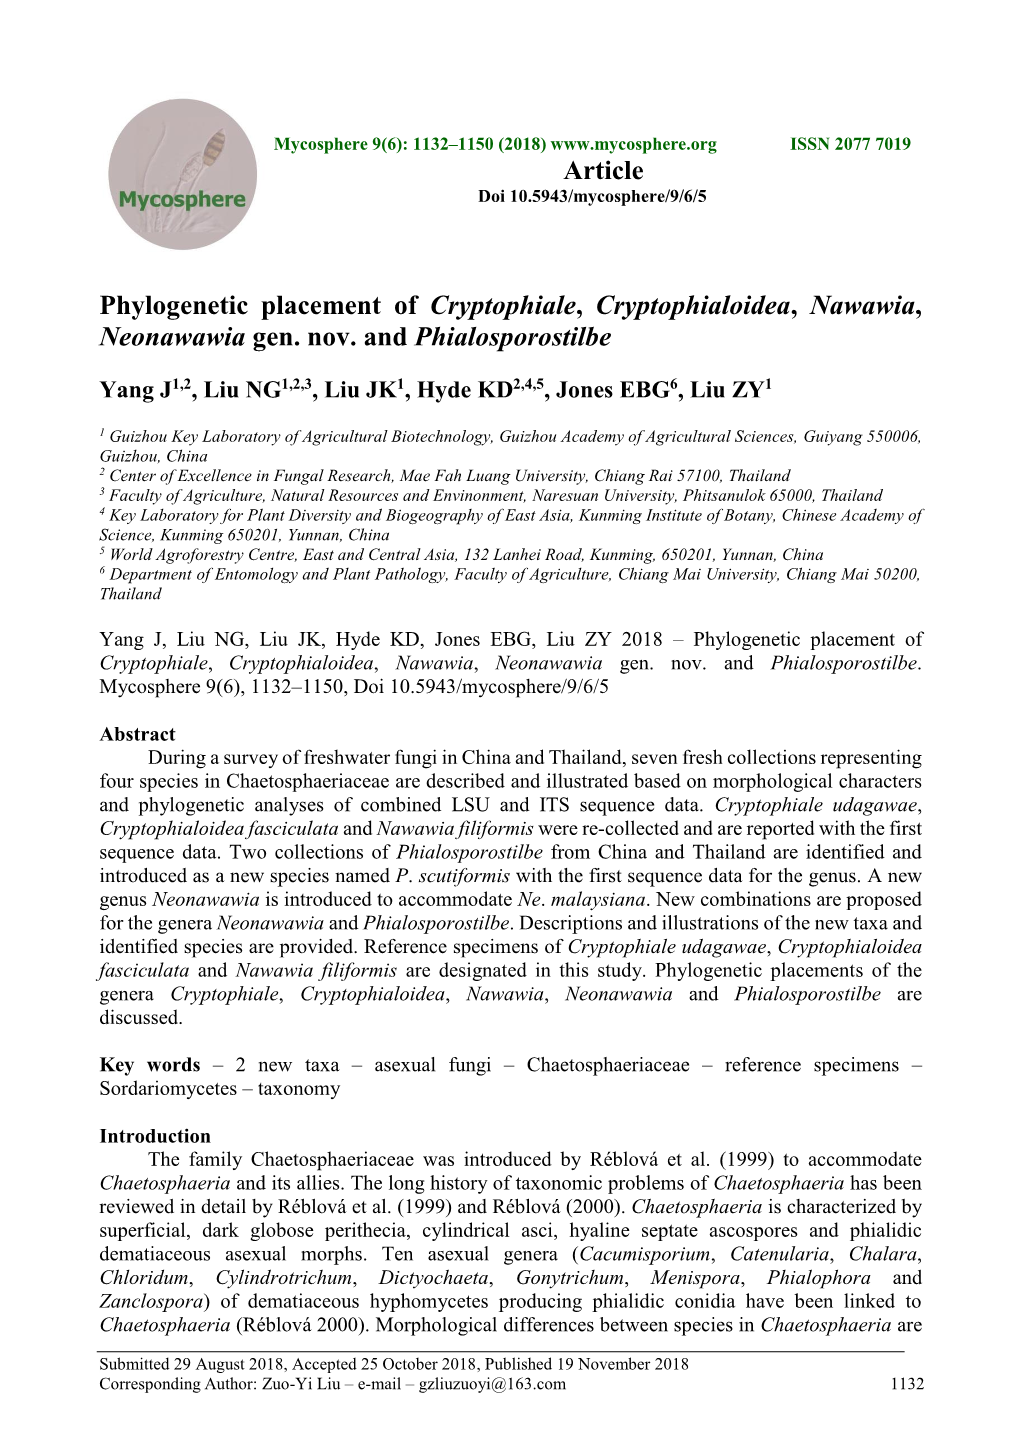 Phylogenetic Placement of Cryptophiale, Cryptophialoidea, Nawawia, Neonawawia Gen